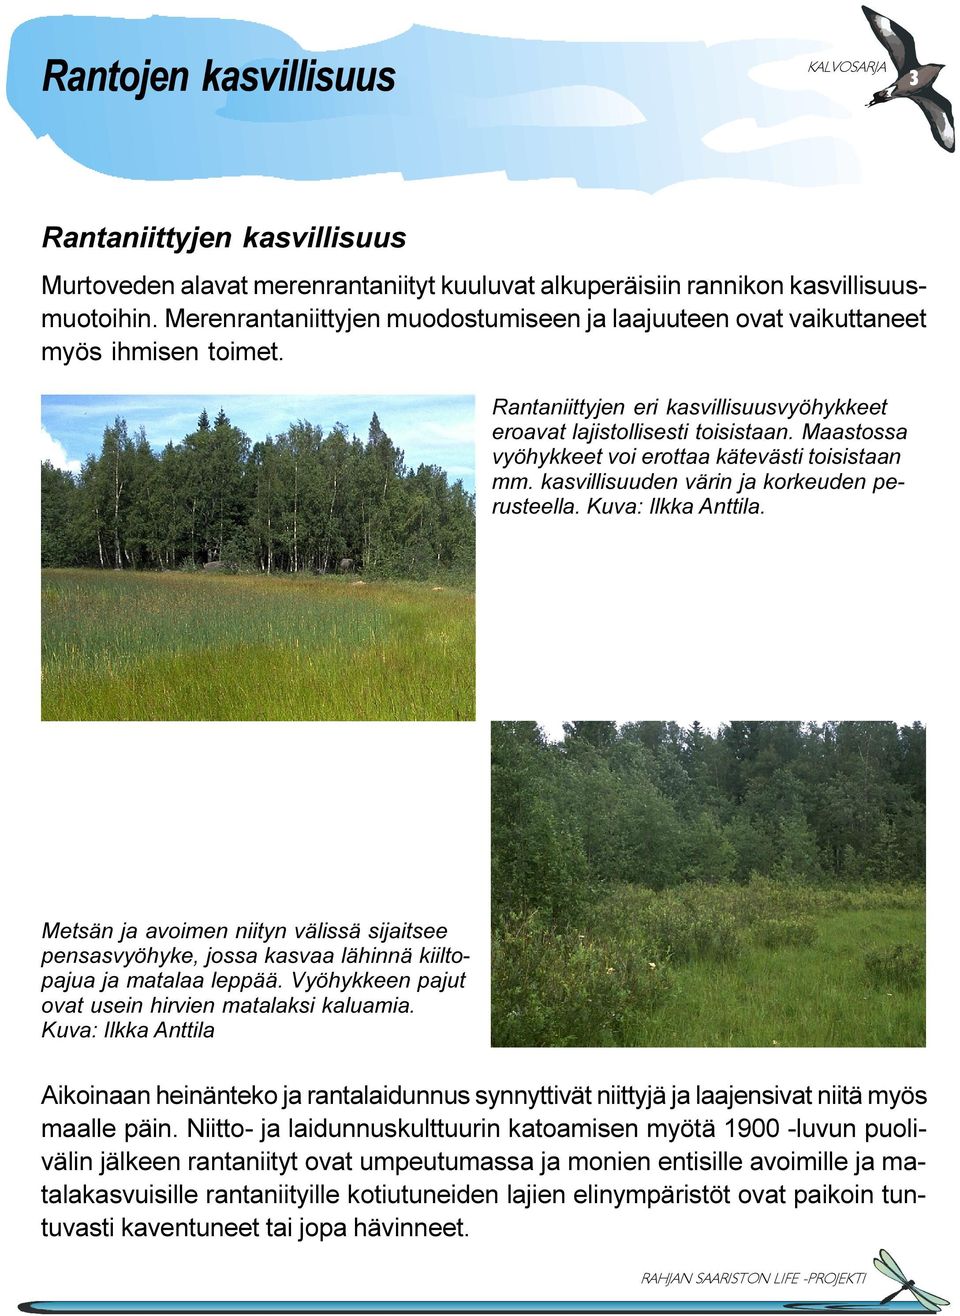 Maastossa vyöhykkeet voi erottaa kätevästi toisistaan mm. kasvillisuuden värin ja korkeuden perusteella. Kuva: Ilkka Anttila.